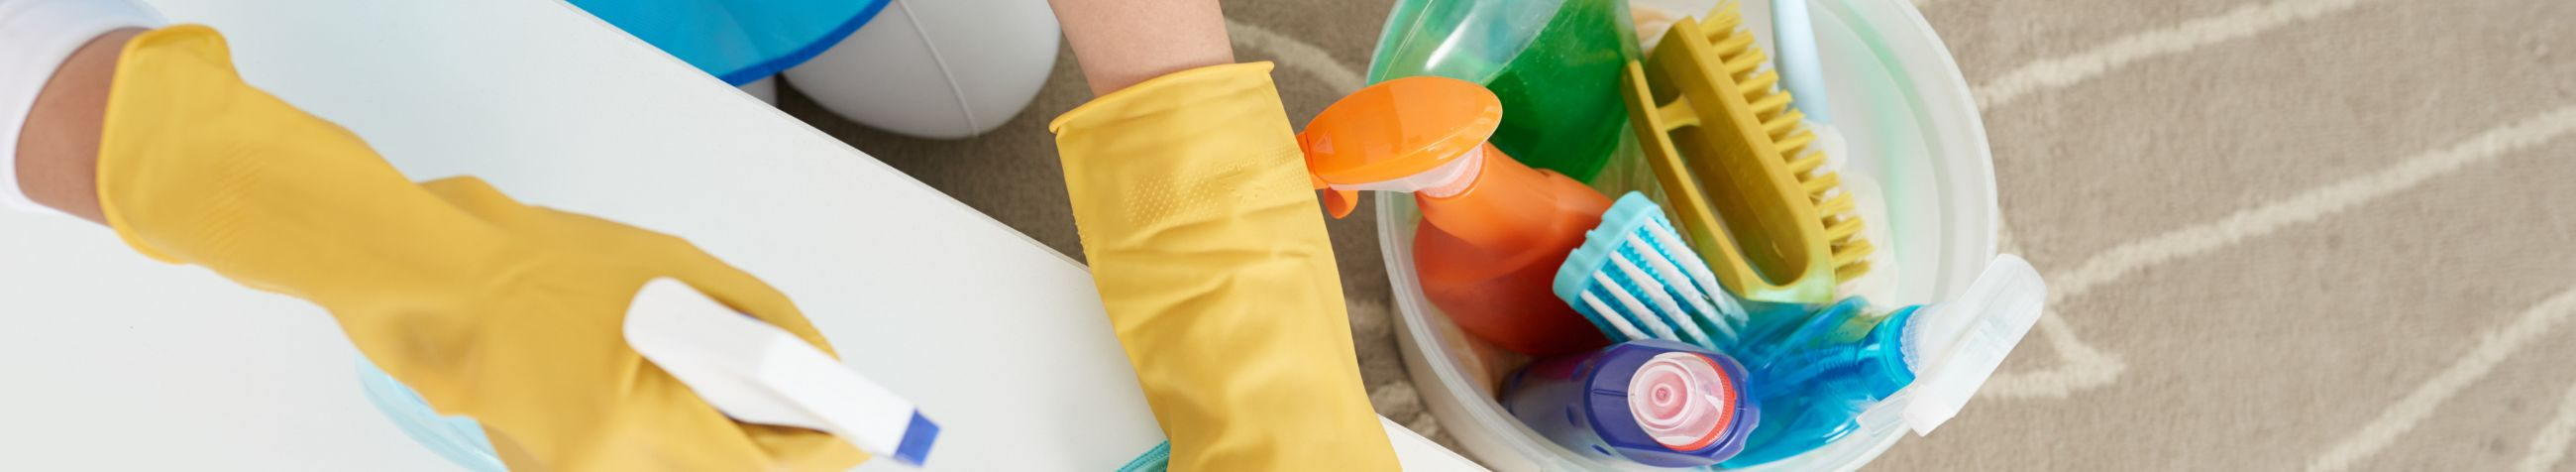 Siivous Puhastus OÜ pakub professionaalseid puhastusteenuseid, mis hõlmavad hoolduskoristust, kodupuhastust, ja laopuhastust.